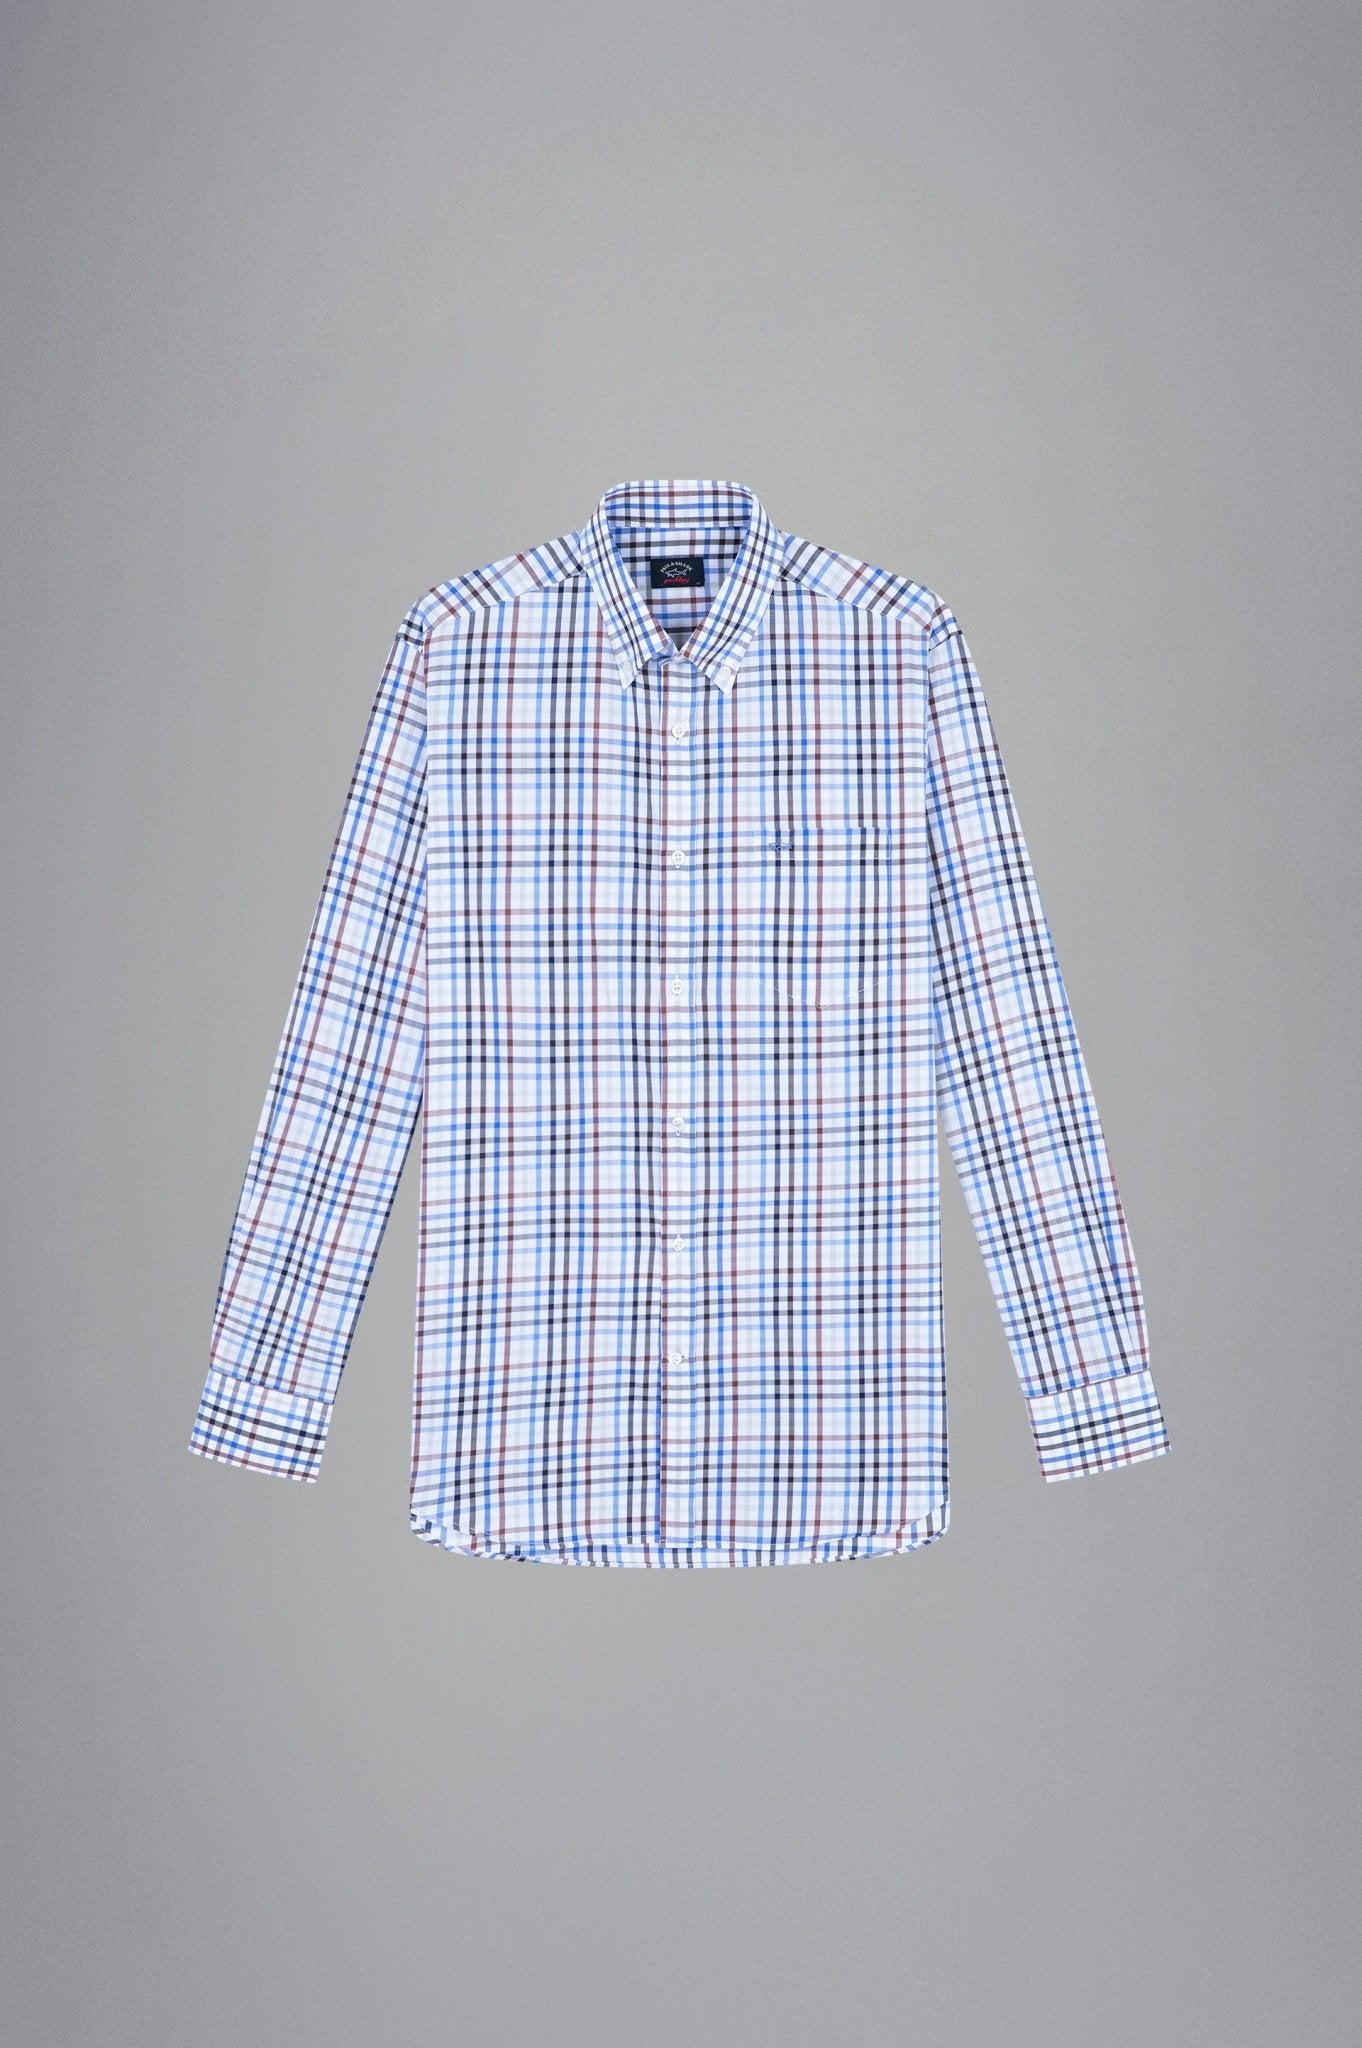 PAUL&SHARK X Long Sleeve Twill Check Shirt BLUE/BROWN/NAVY/WHITE - Henry BucksShirts38AW240046 - BLBRNVYWHT - 40